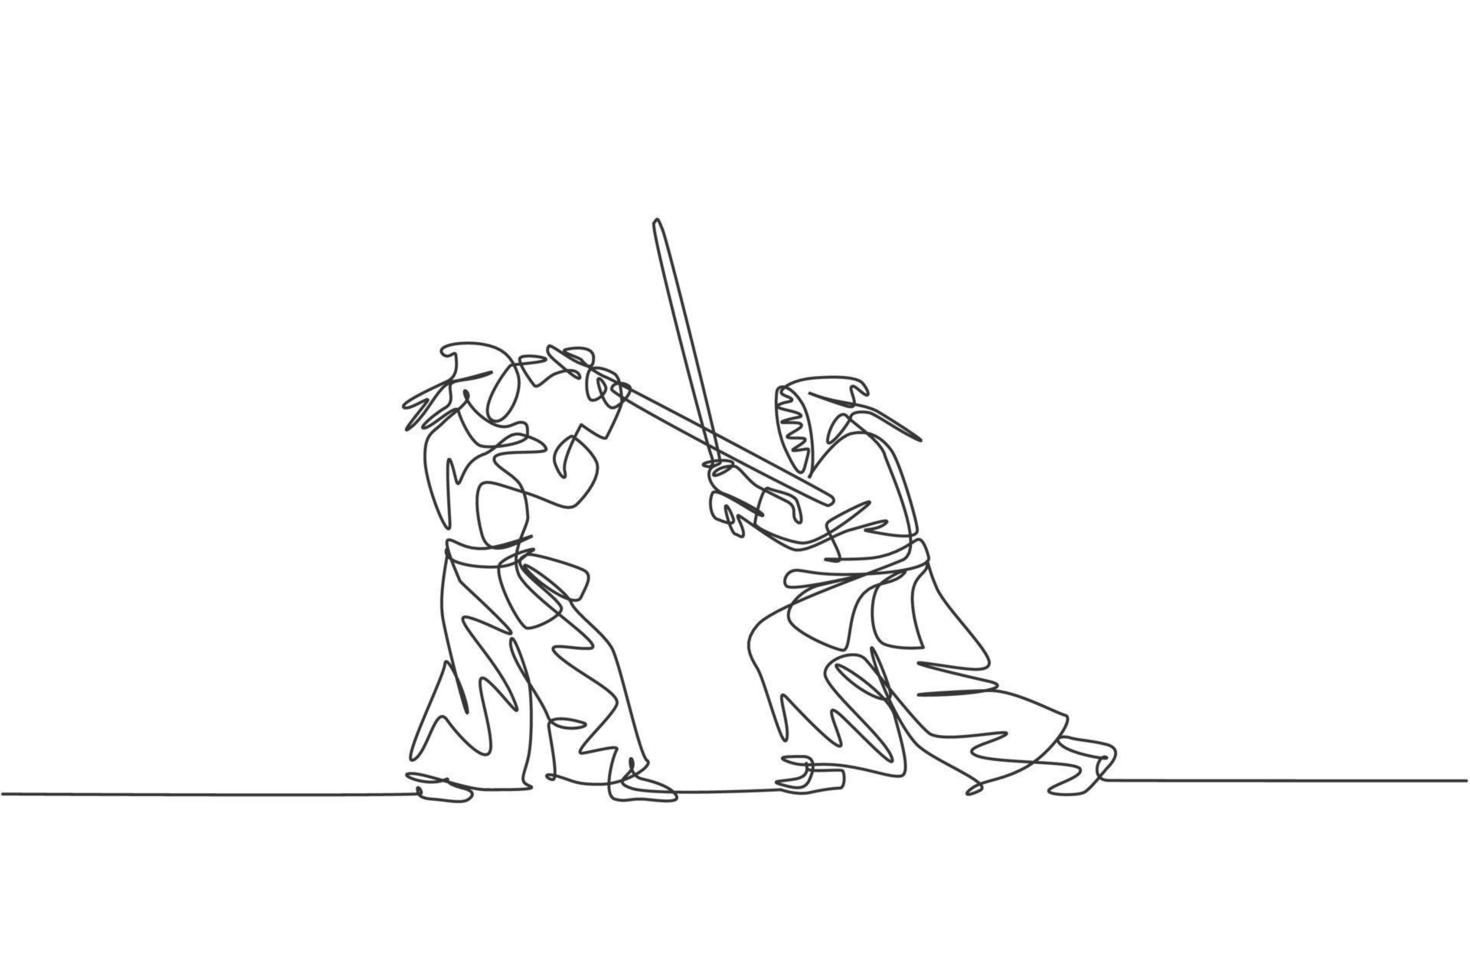 een doorlopende lijntekening van twee jonge sportieve mannen die vaardigheid vechten op de nationale kendo-competitie in het dojocentrum. gezond vechtsport sportconcept. dynamische enkele lijn tekenen ontwerp vectorillustratie vector